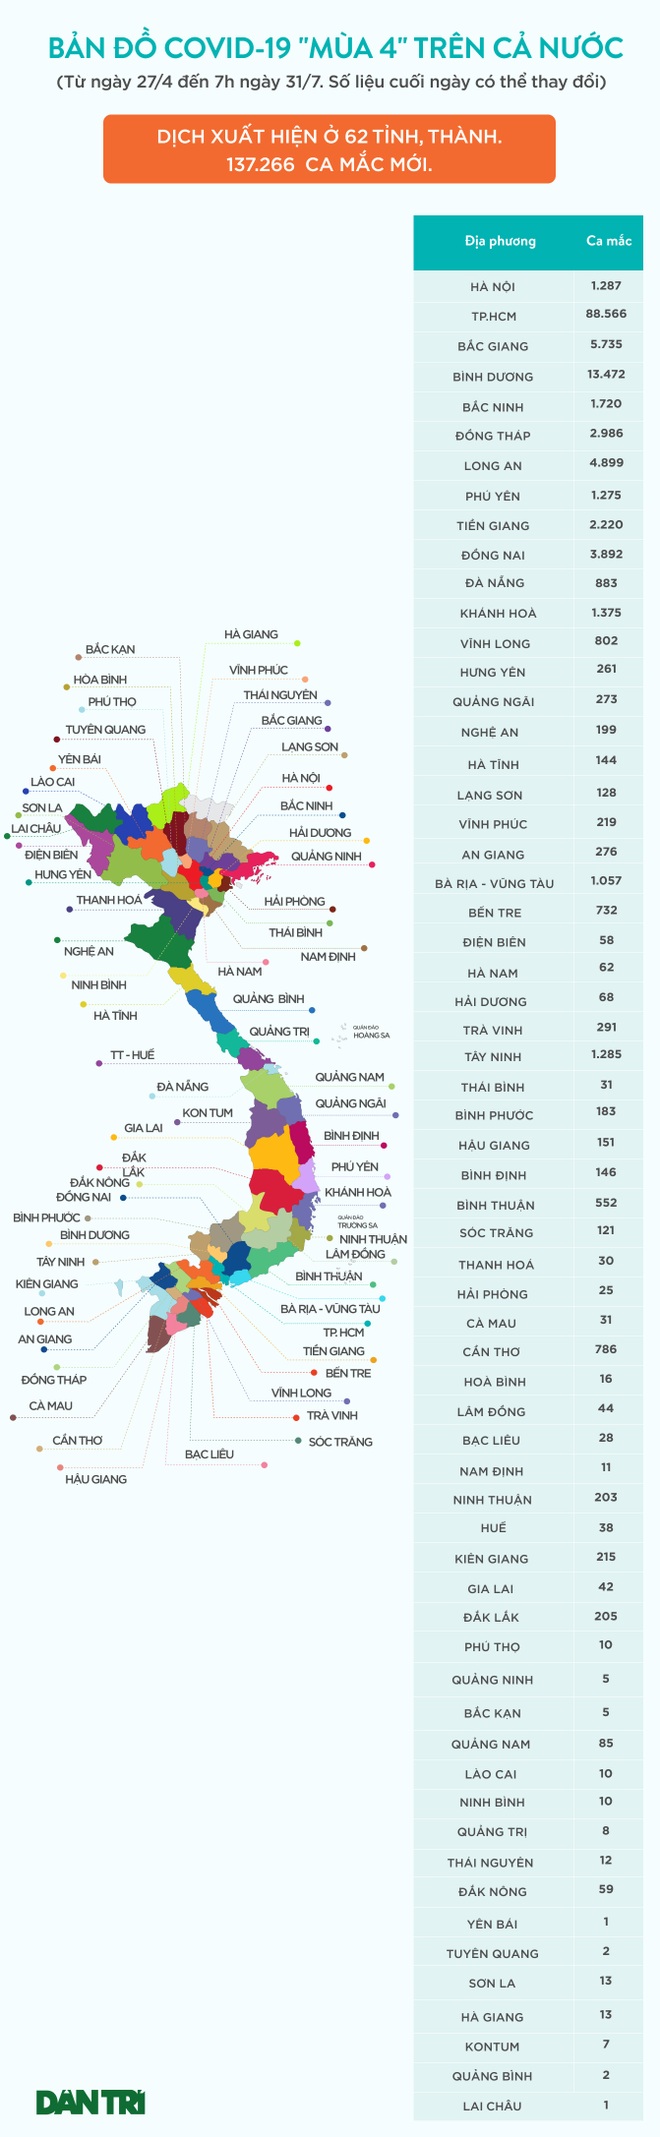 Bản đồ Covid-19 ngày 31/7 với 62 tỉnh thành có dịch - 1